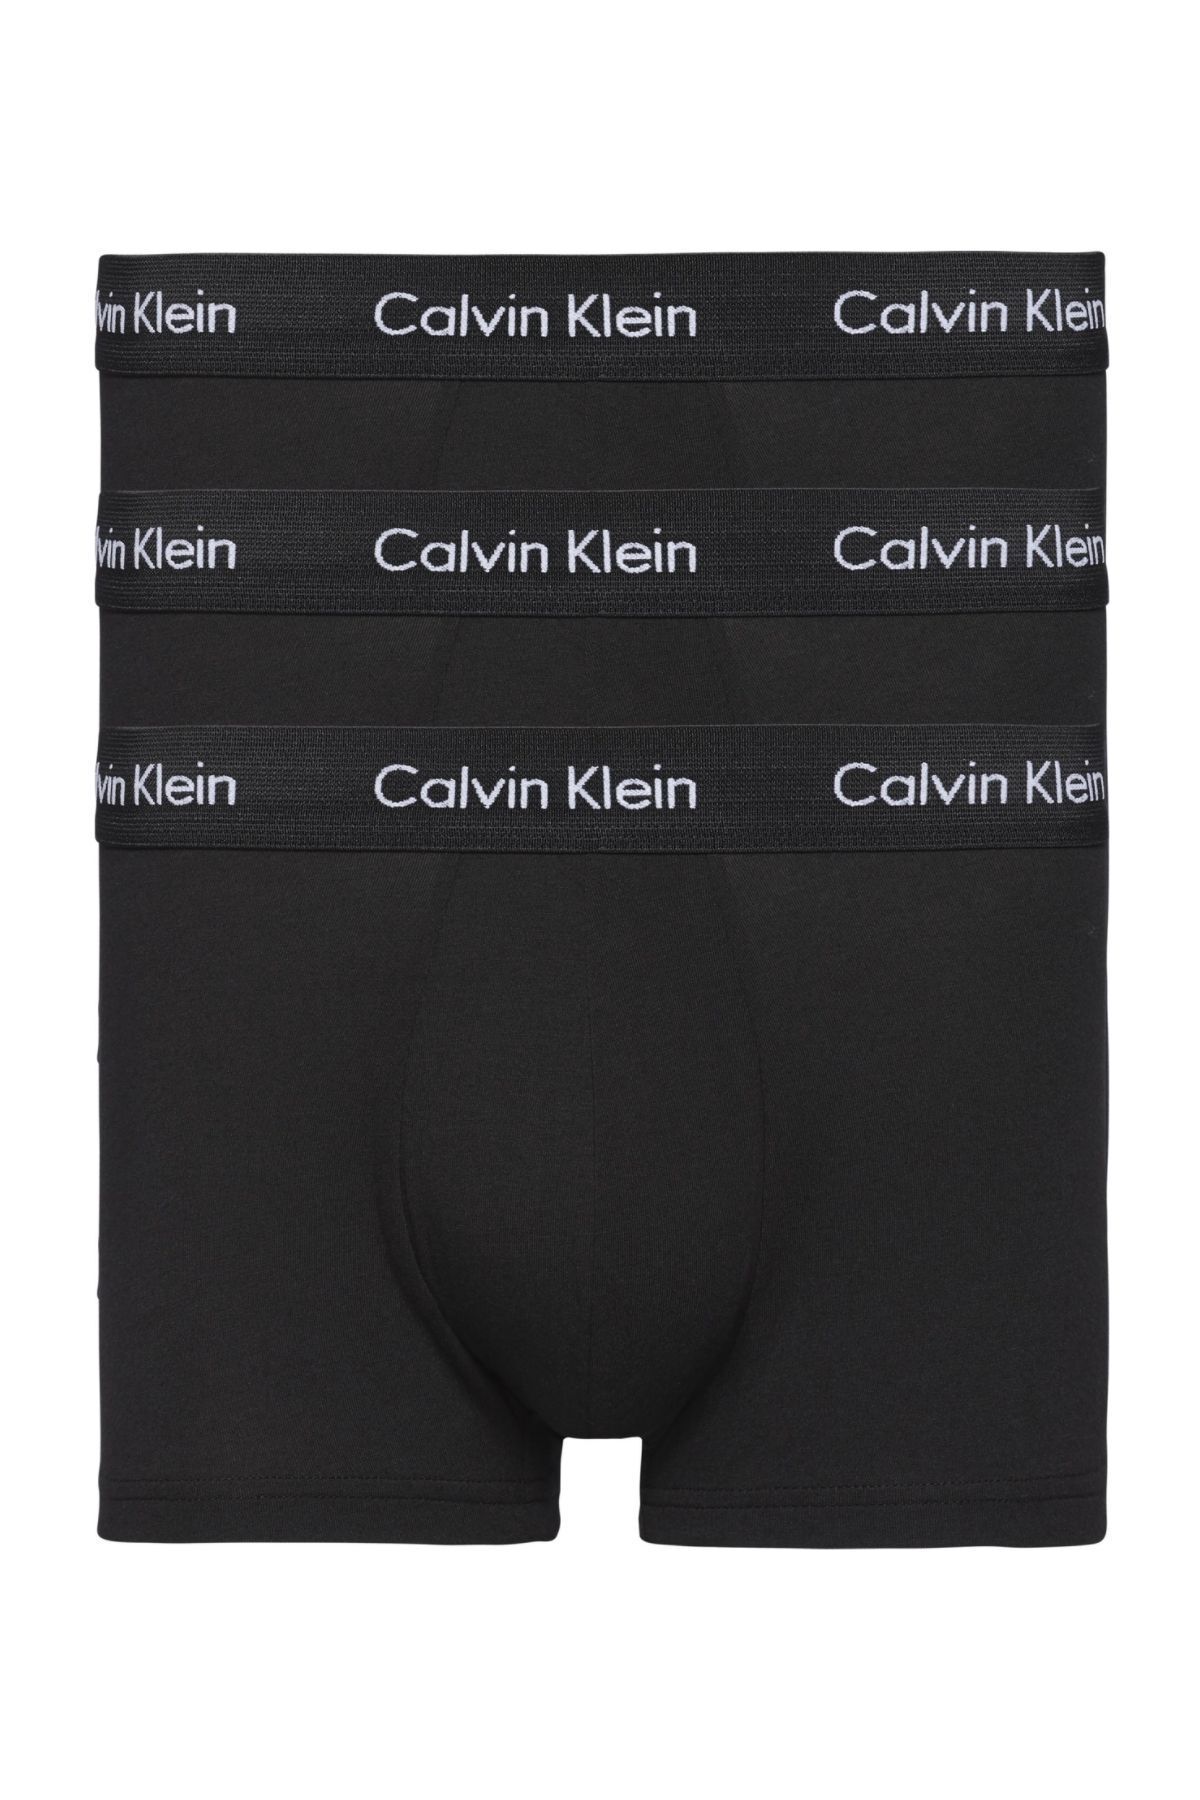 Calvin Klein Erkek Marka Logolu Elastik Bantlı Günlük Kullanıma Uygun Siyah Boxer U2664g-xwb